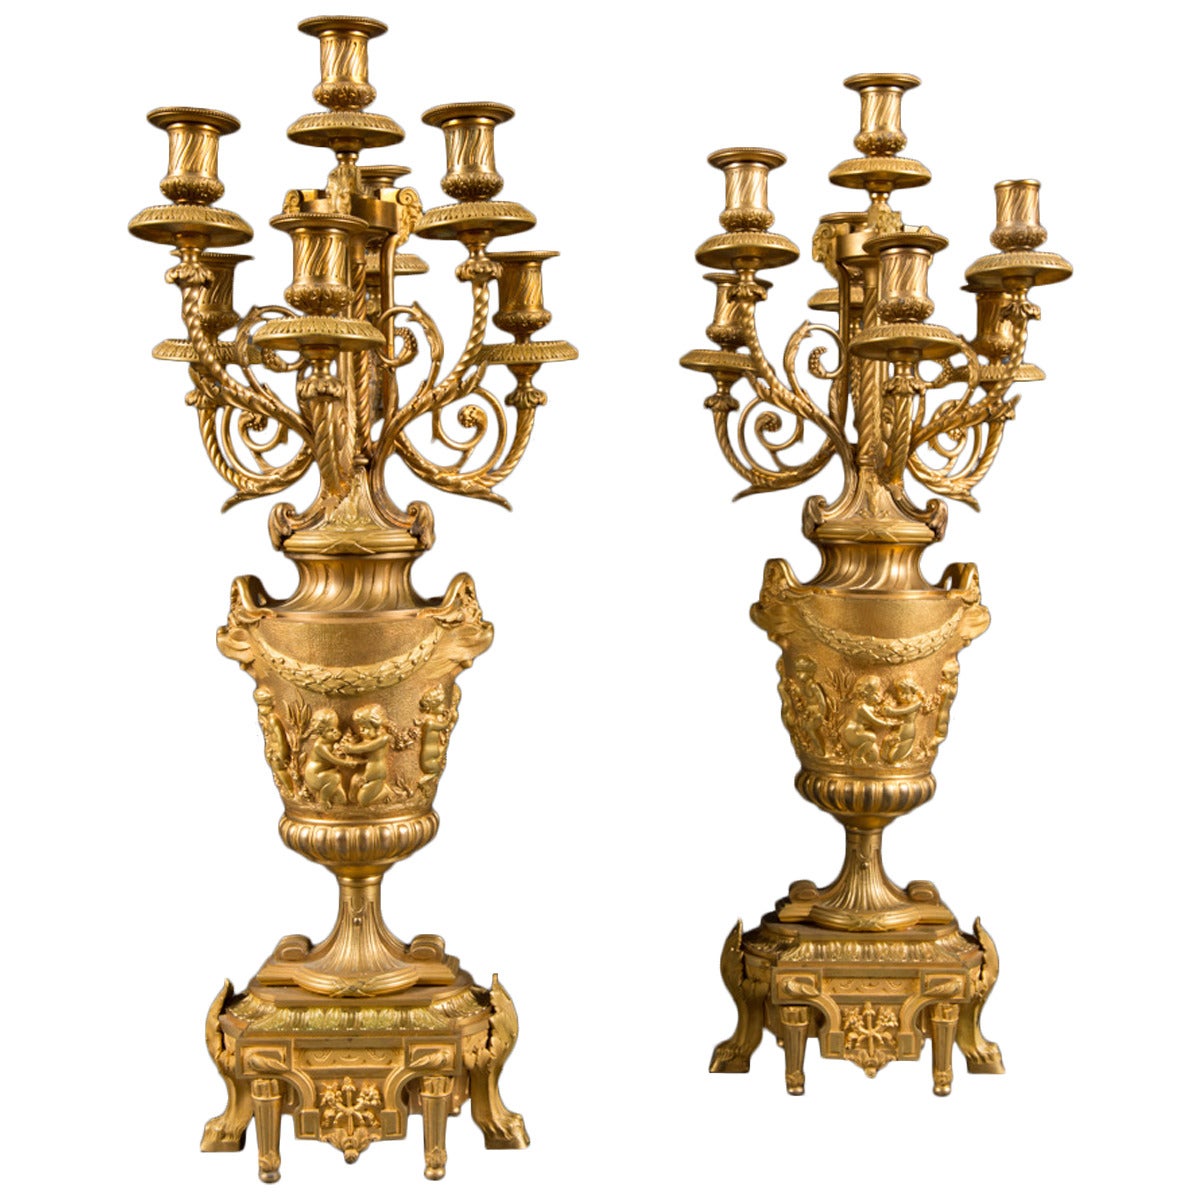 Paire de candélabres en bronze doré français du 19ème siècle attribués à F. Barbedienne